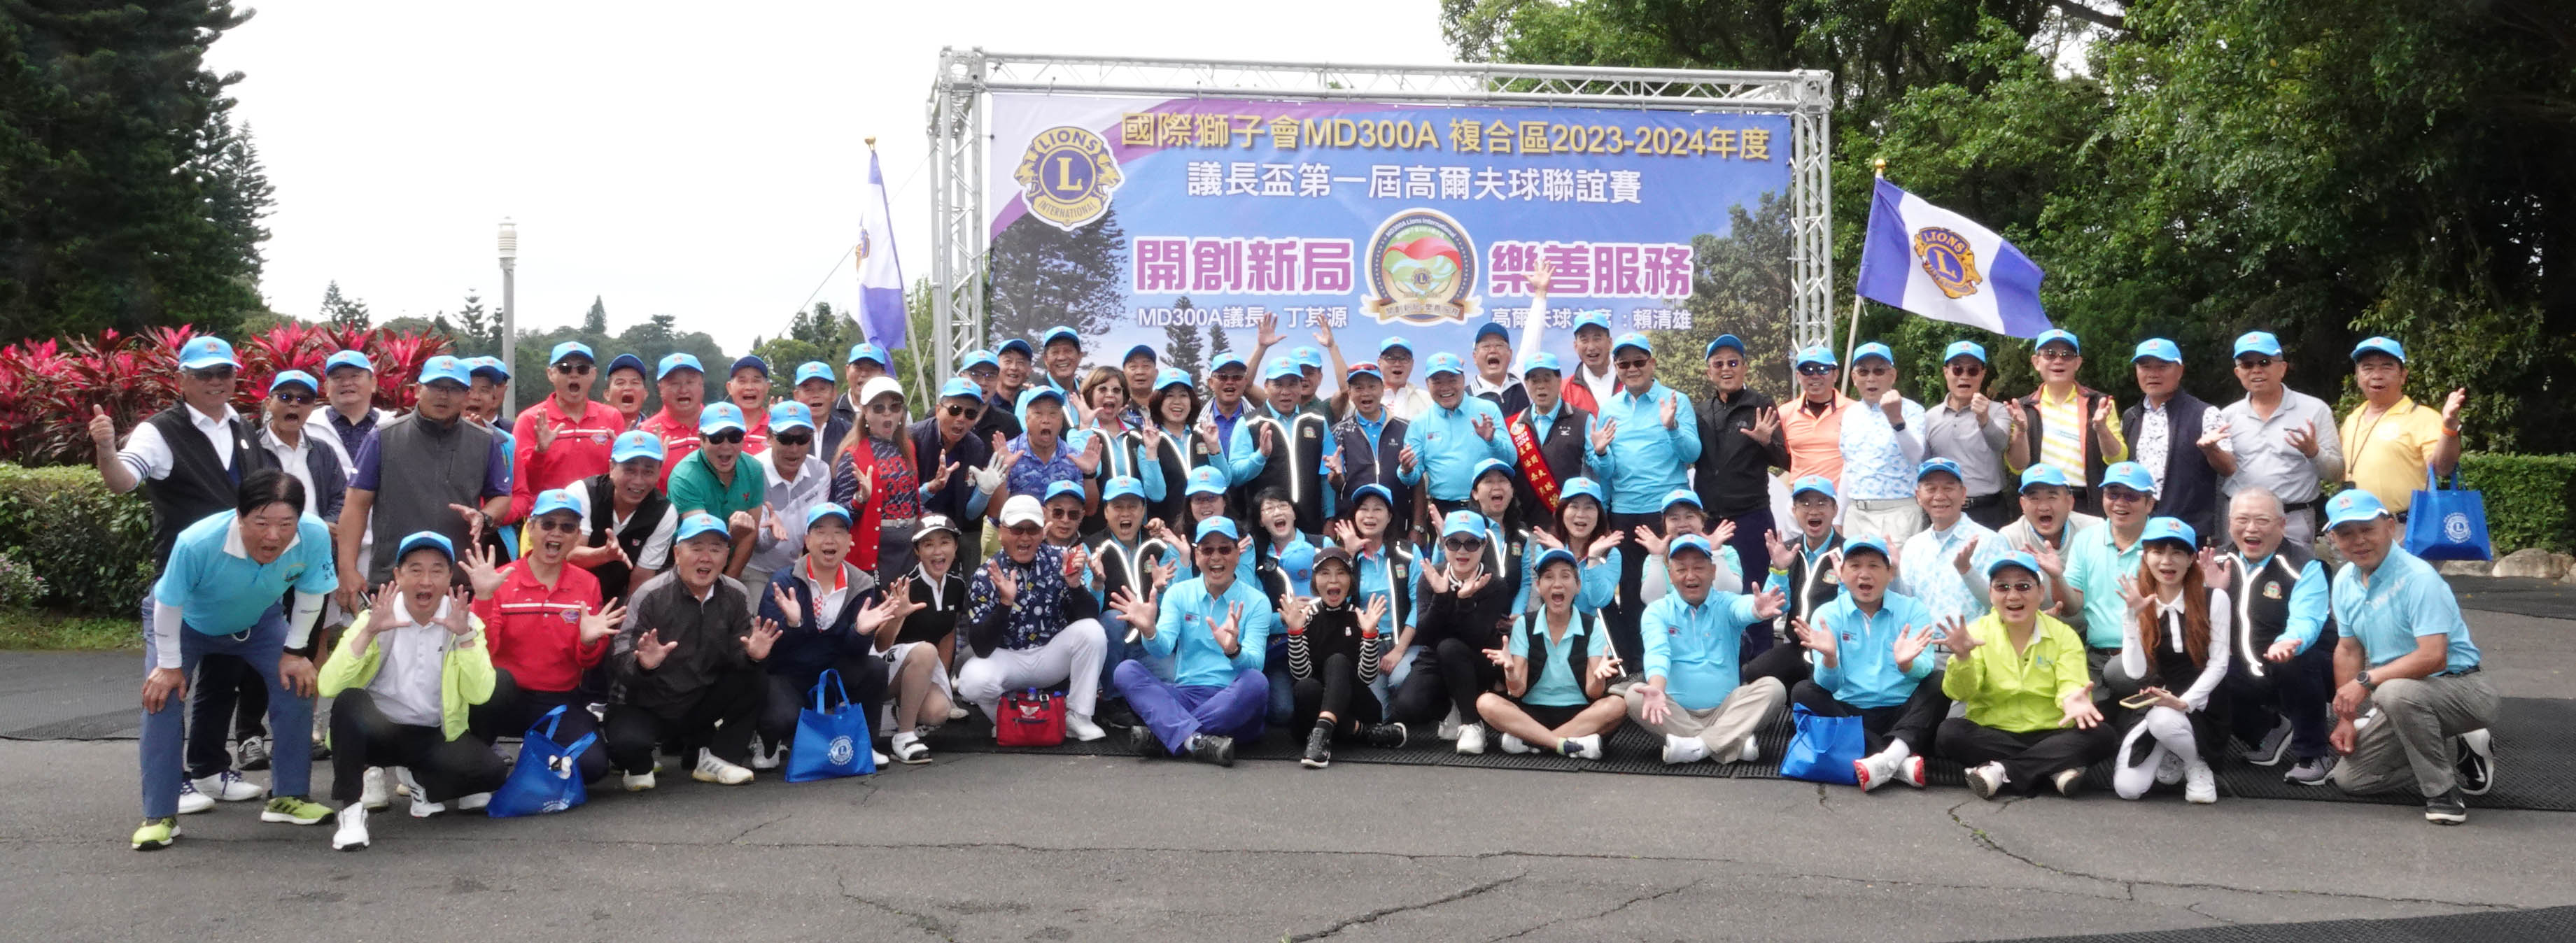 MD300A複合區第一屆議長盃高爾夫球聯誼賽